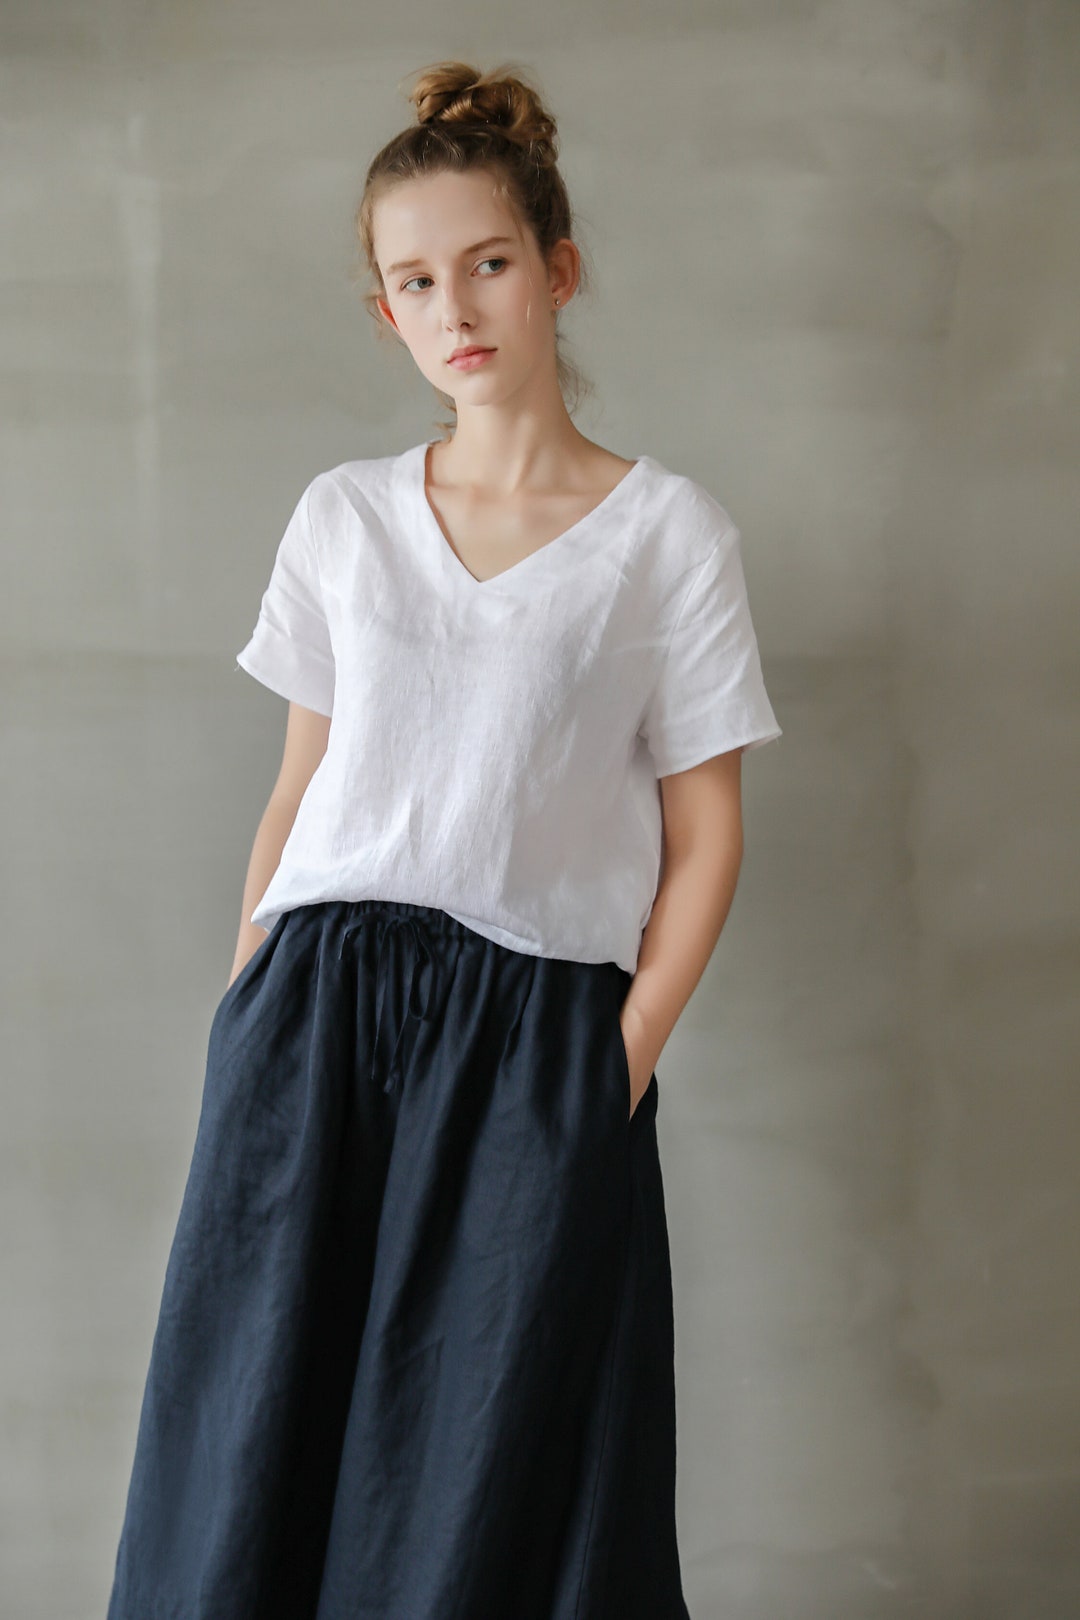 Classic Linen Tee Women, Women's Short Sleeve Linen Top, Short Sleeve ...